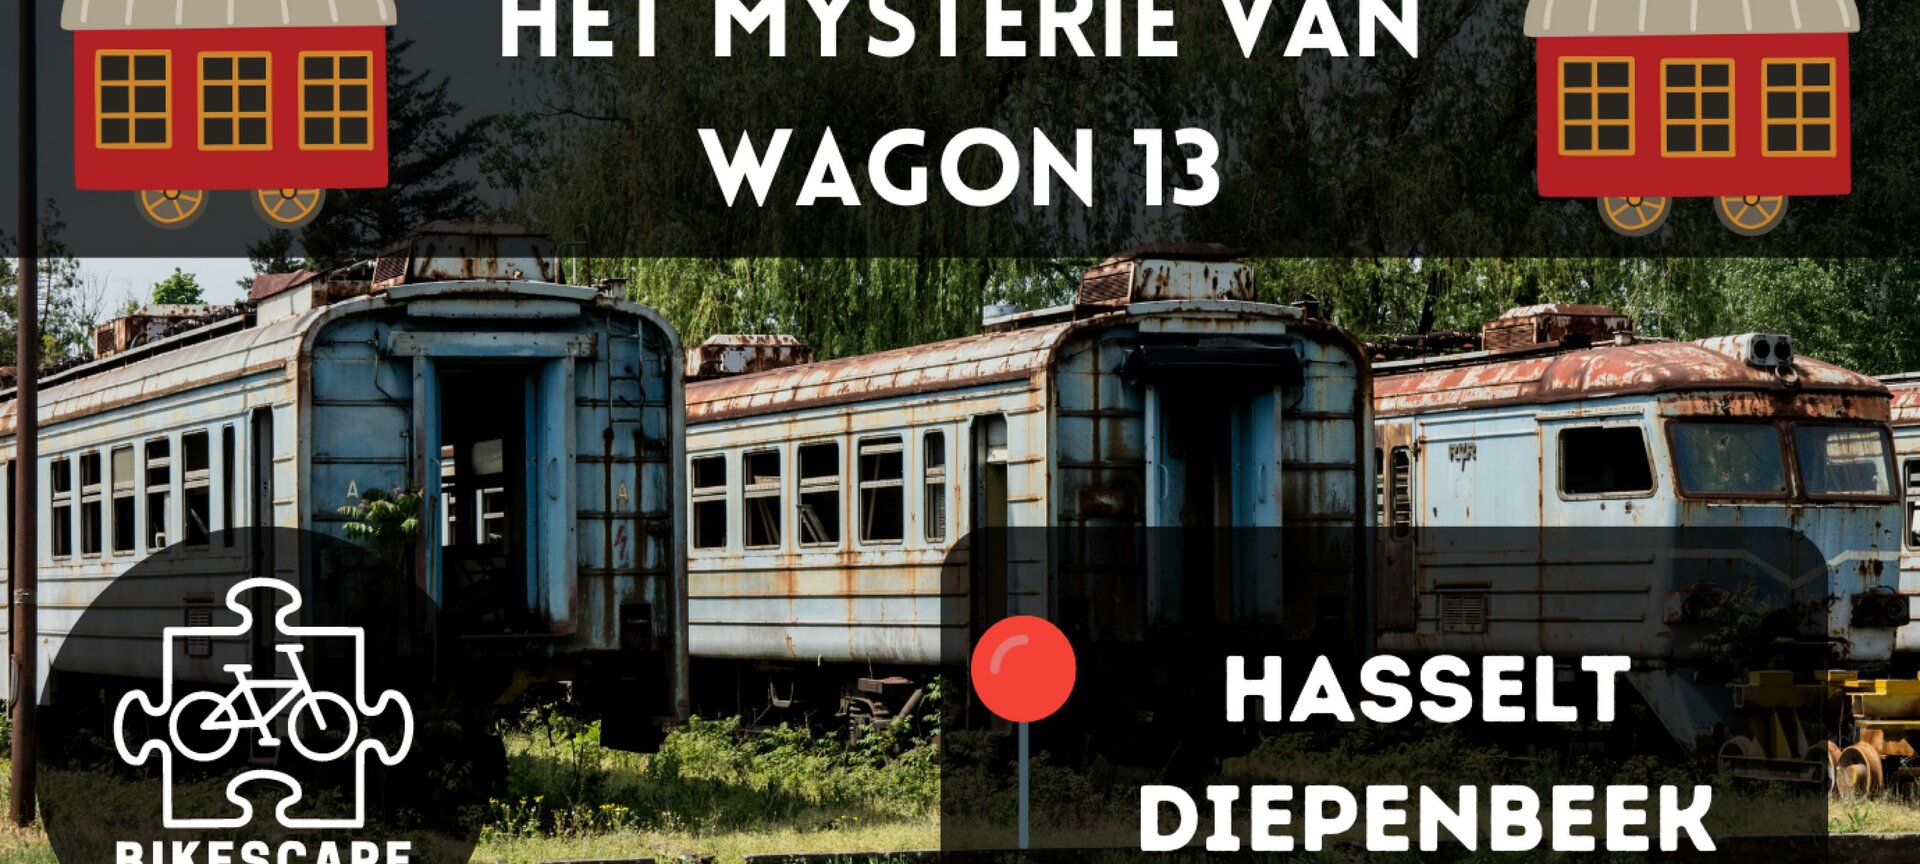 Escape Fietstocht - Het Mysterie Van Wagon 13 - Hasselt/Diepenbeek - Het Mysterie Van Wagon 13 - Hasselt/Diepenbeek